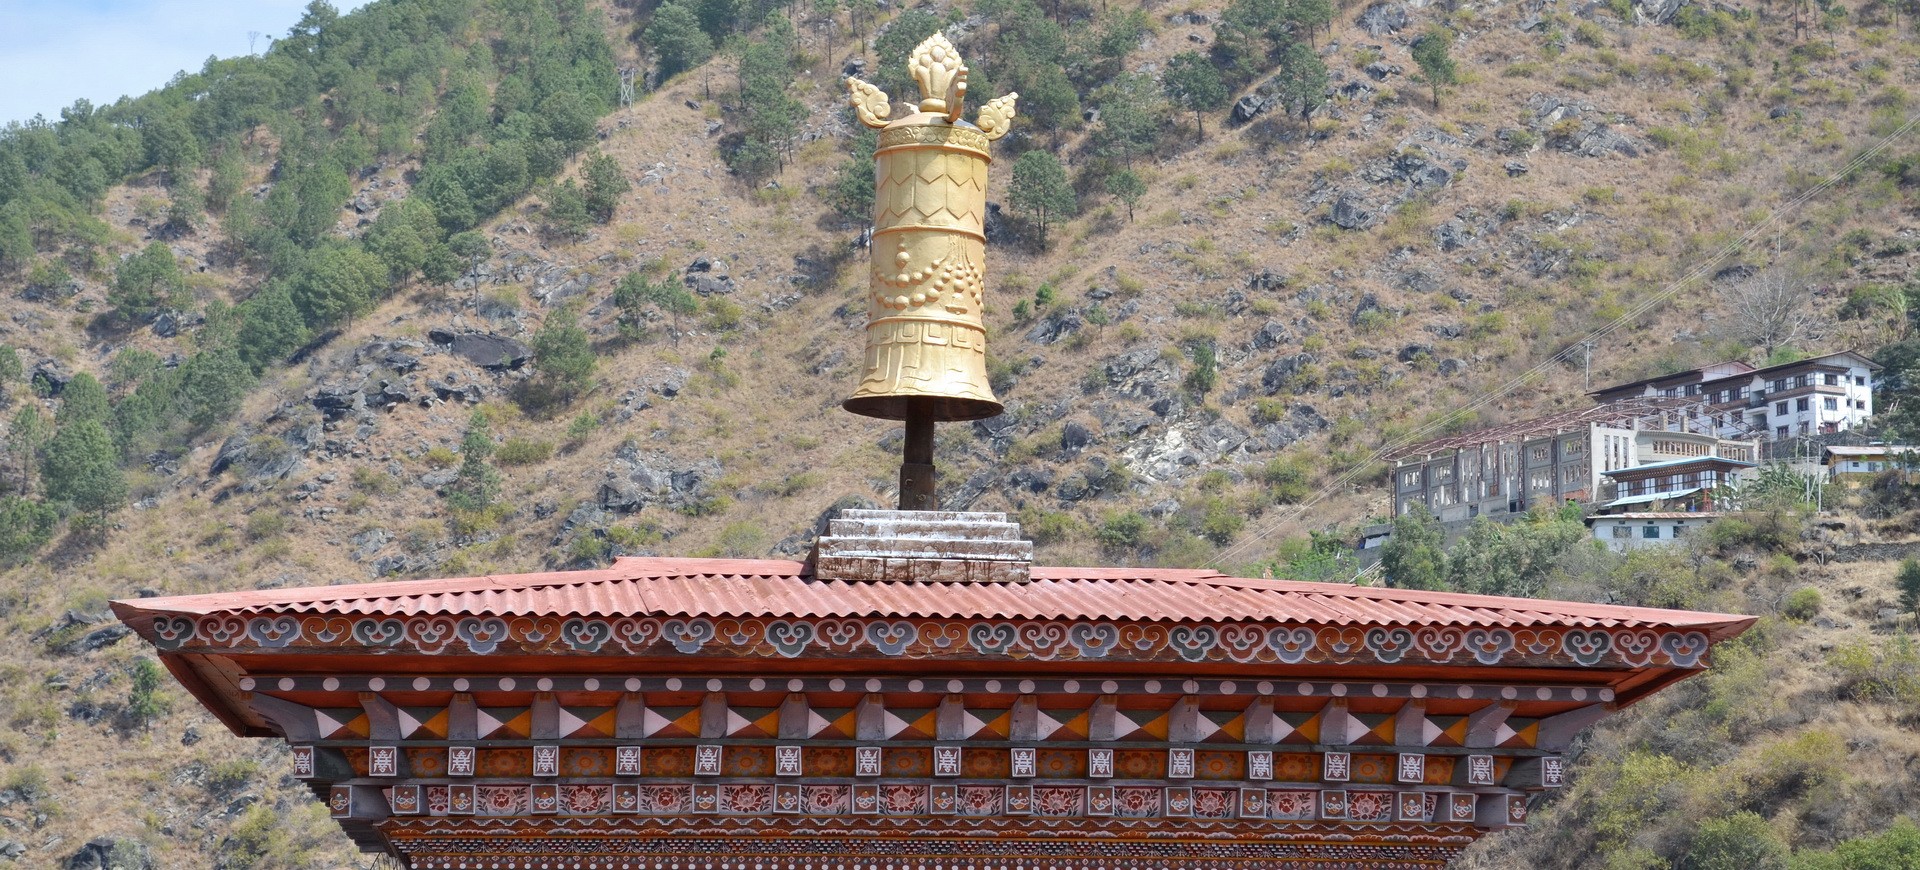 Bhoutan Trashigang Dzong Monastère